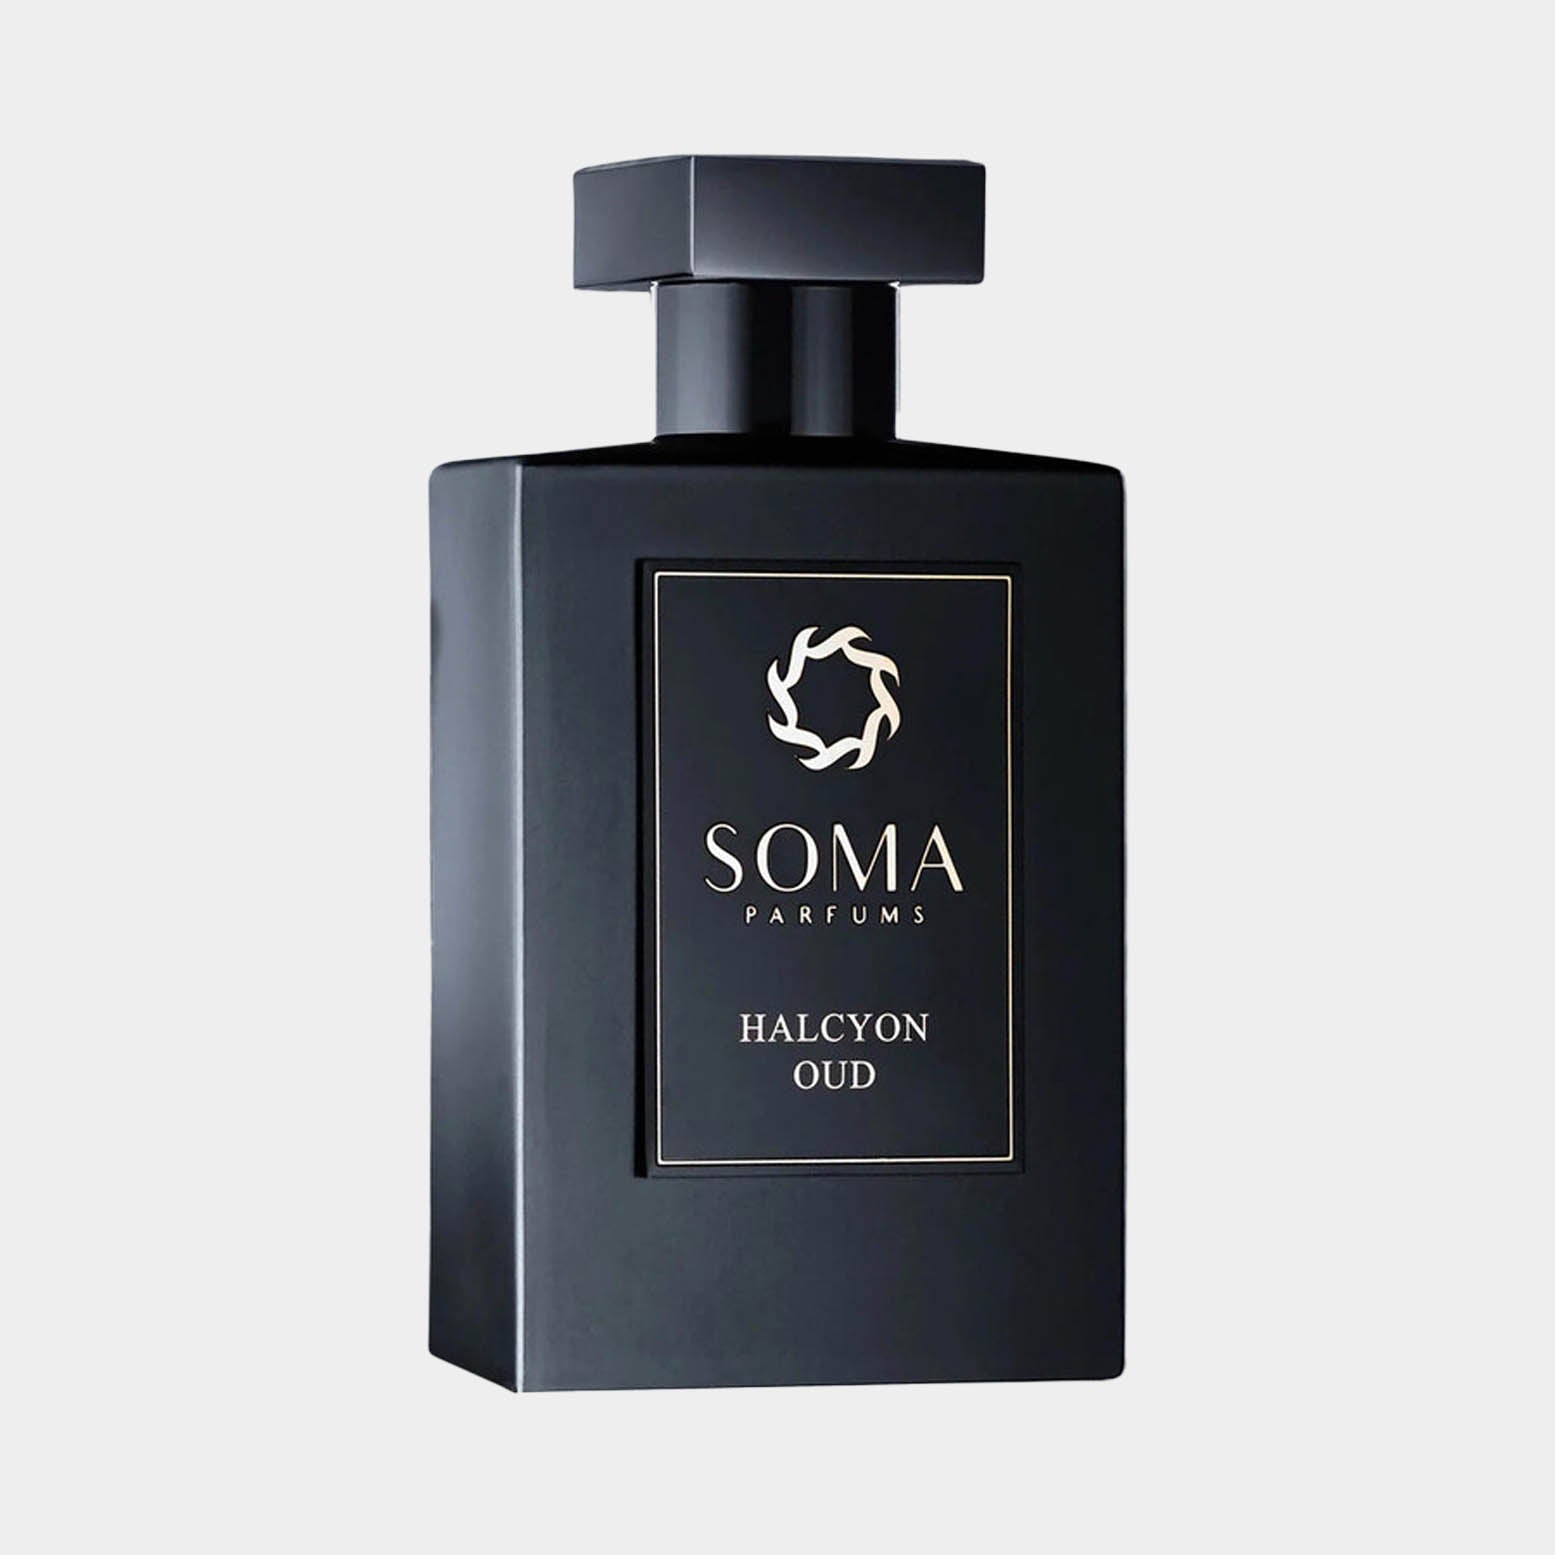 De parfum Soma Parfums Halcyon Oud.